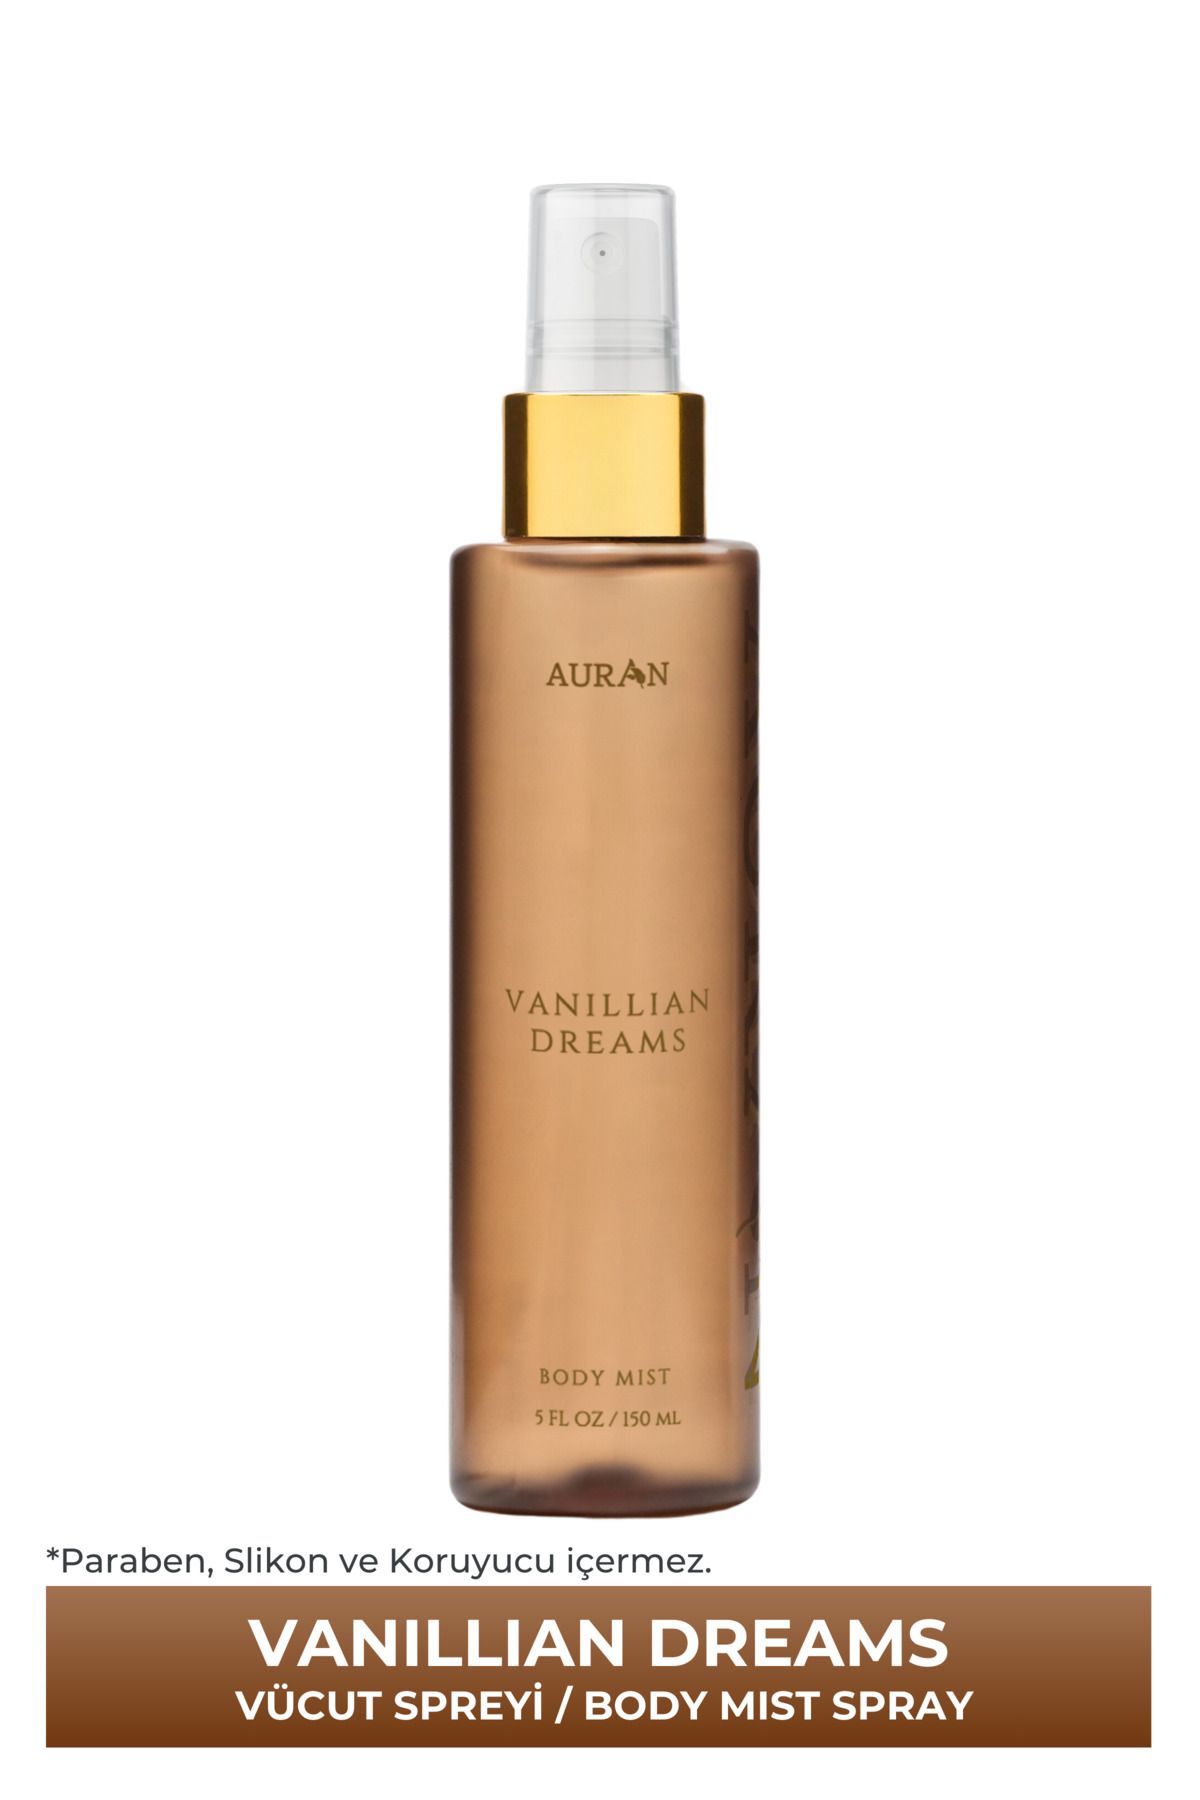 AURAN Vanillian Dreams Parfümlü Kadın Vücut Spreyi Vücut Misti Body Mist Spray 150ml